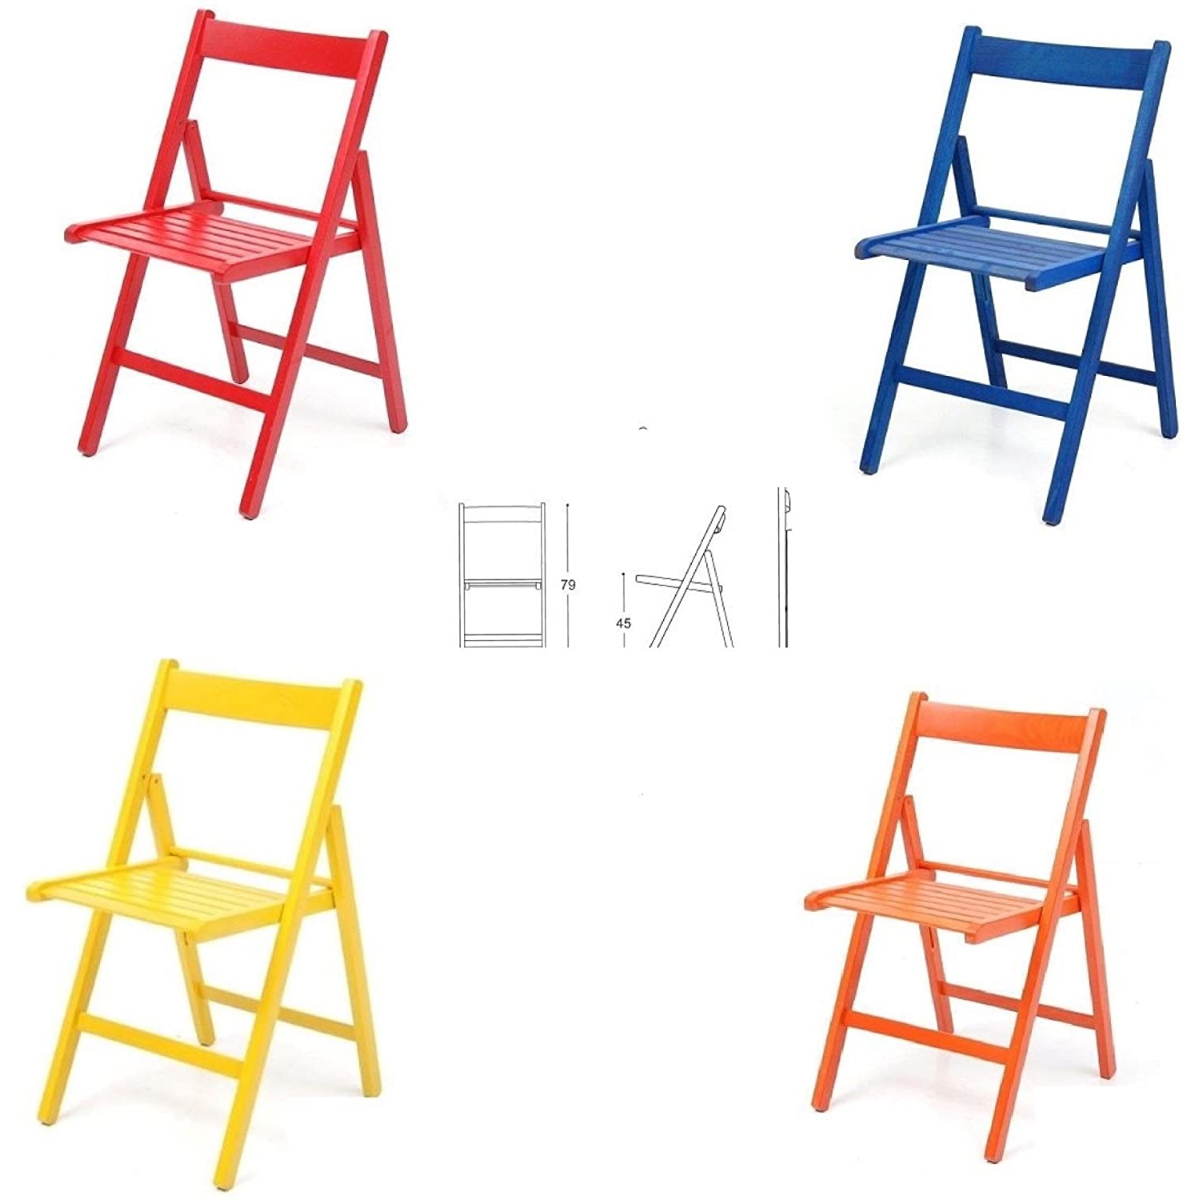 4 sedie Colorate Pieghevole Sedia in Legno Verniciato richiudibile per Campeggio casa e Giardino Rosso,Blu,Giallo,Arancione